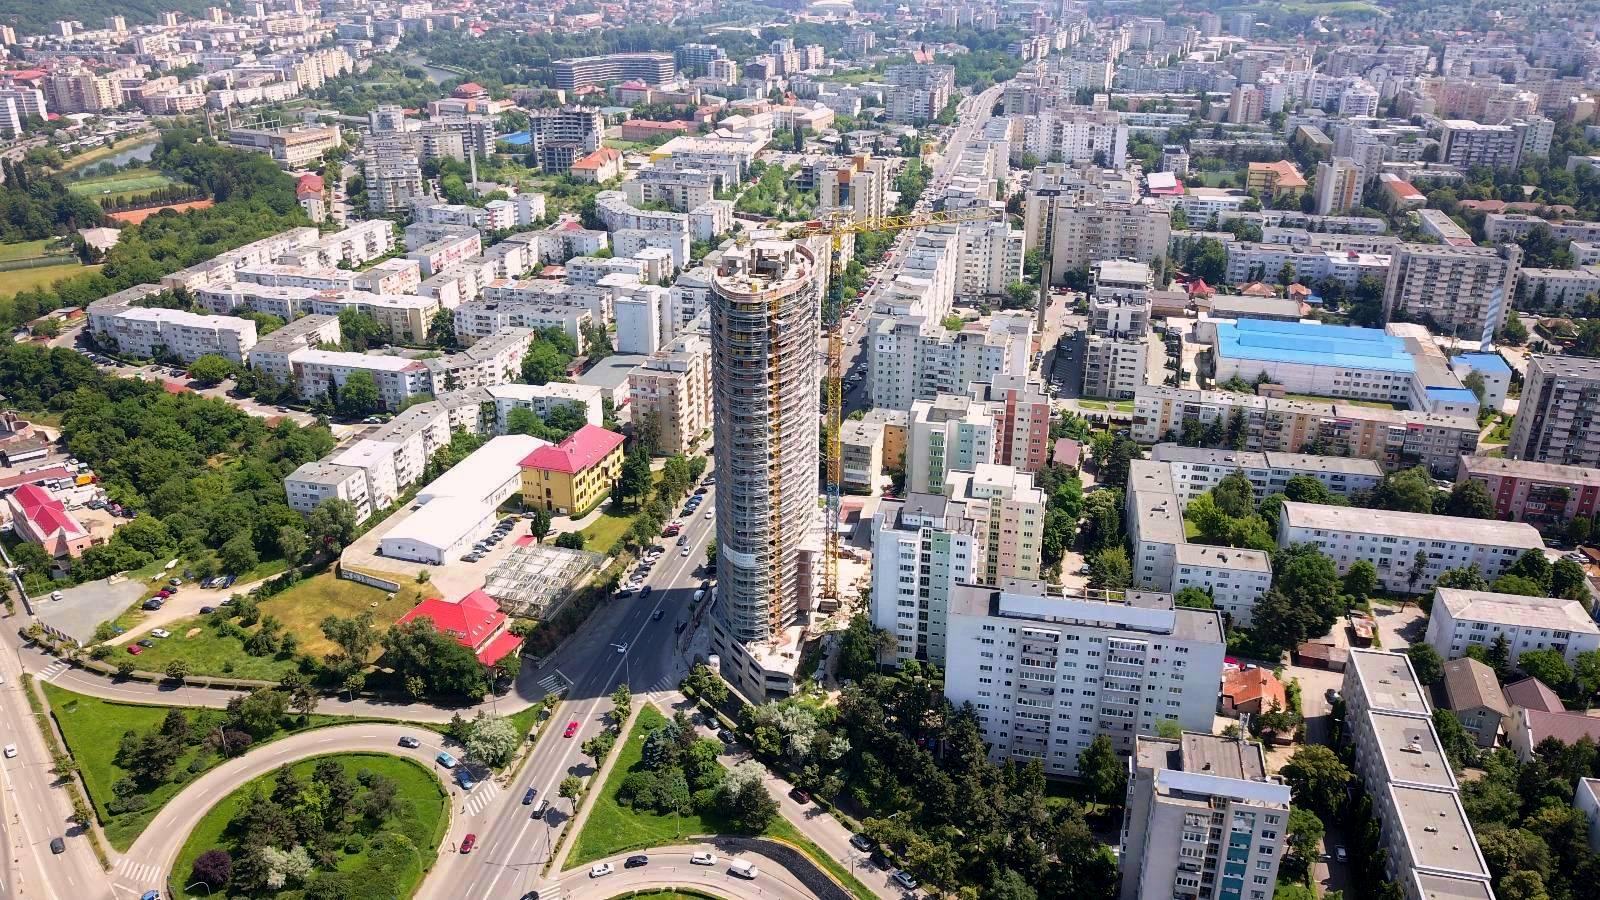 Cele mai înalte clădiri din Cluj-Napoca